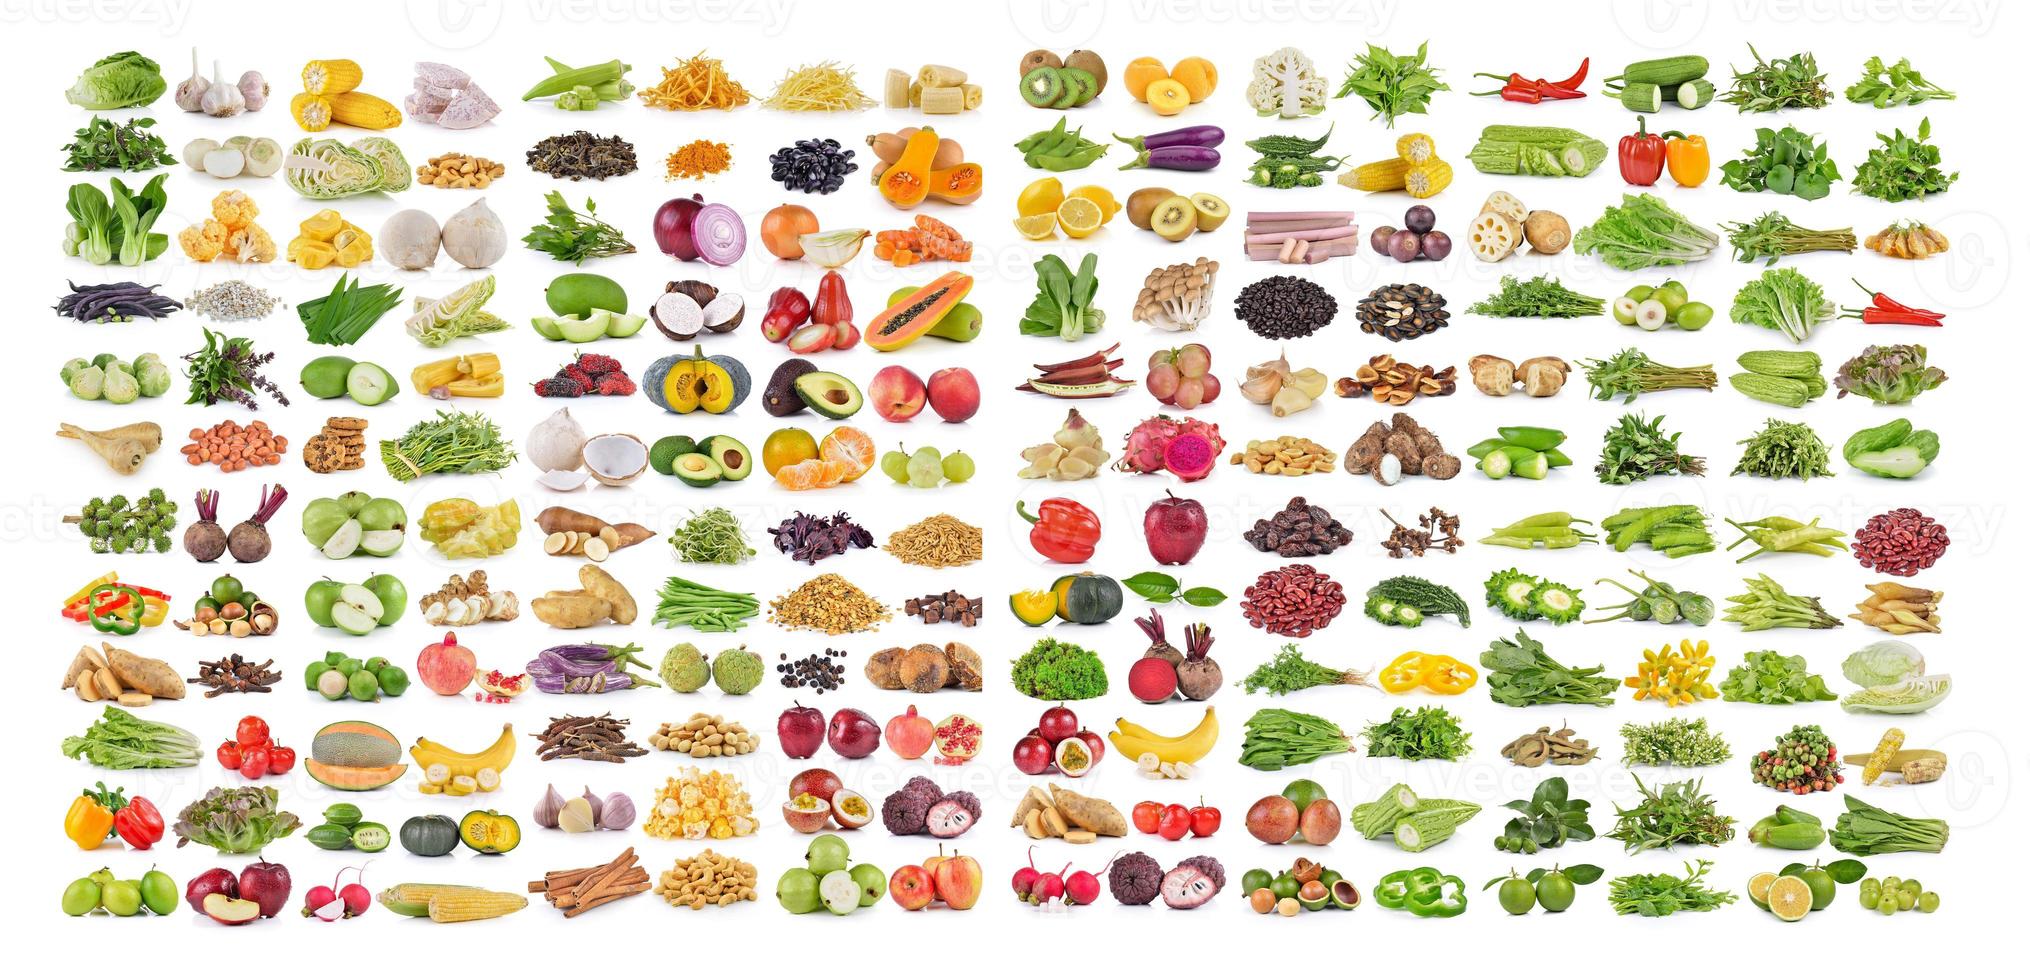 Gemüse und Obst auf Weiß foto